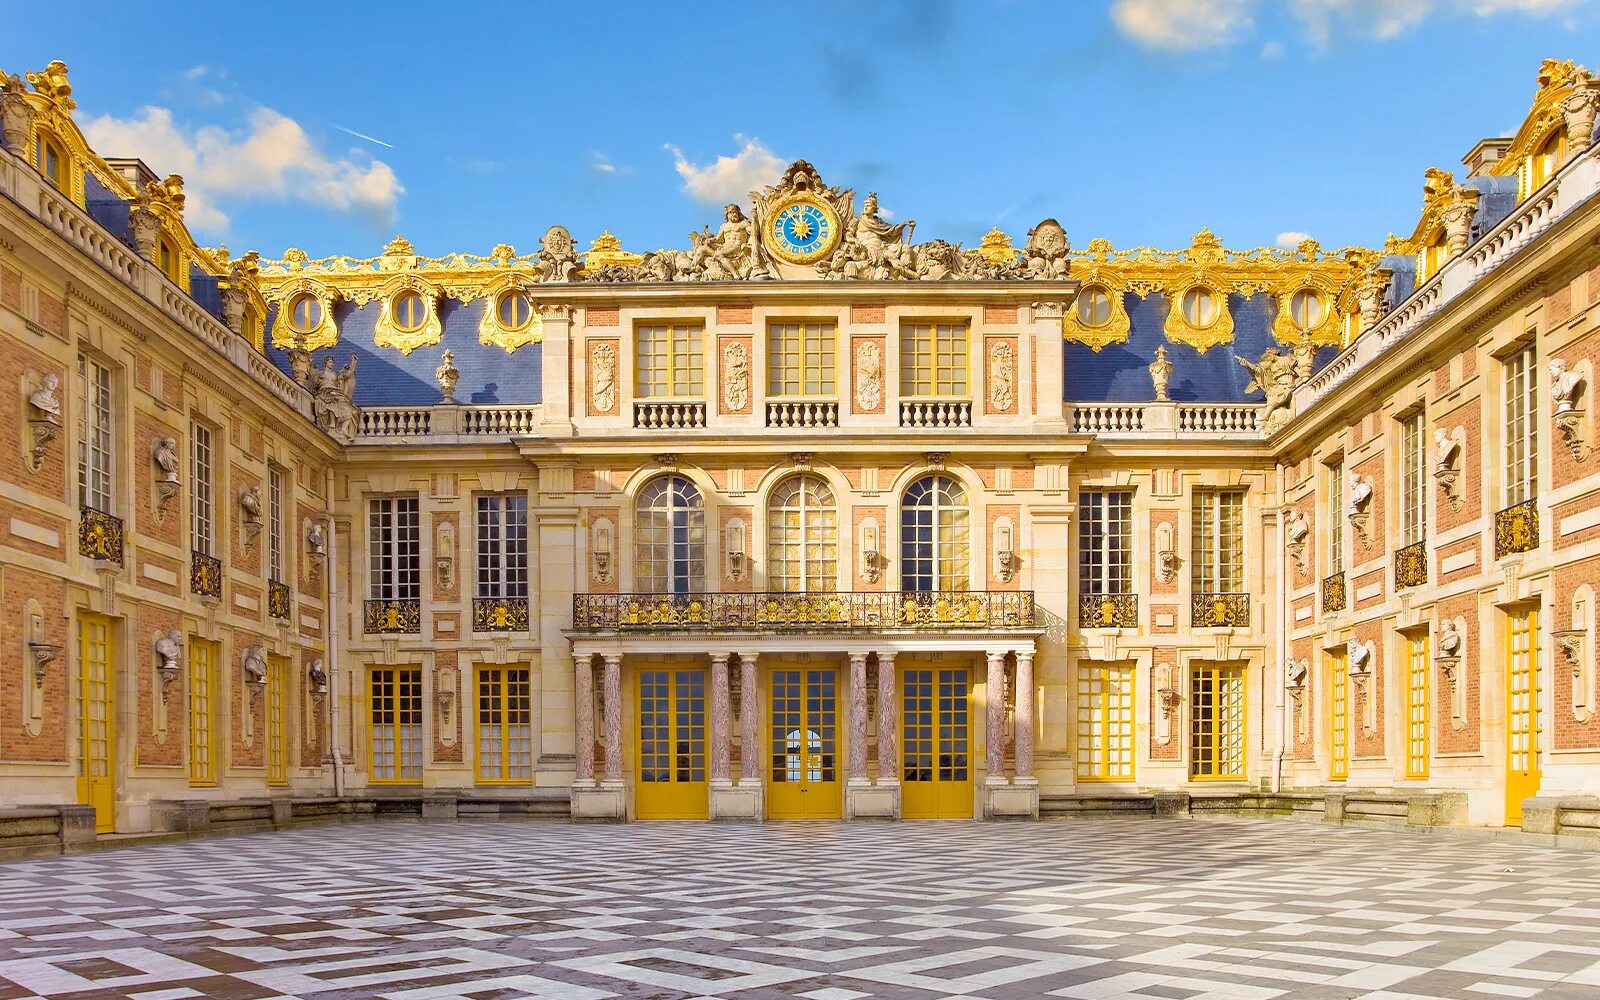 Chateau de versailles. Версальский дворец дворцы Франции. Версаль Париж. Версаль Франция ворота. Франция достопримечательности Версаль.